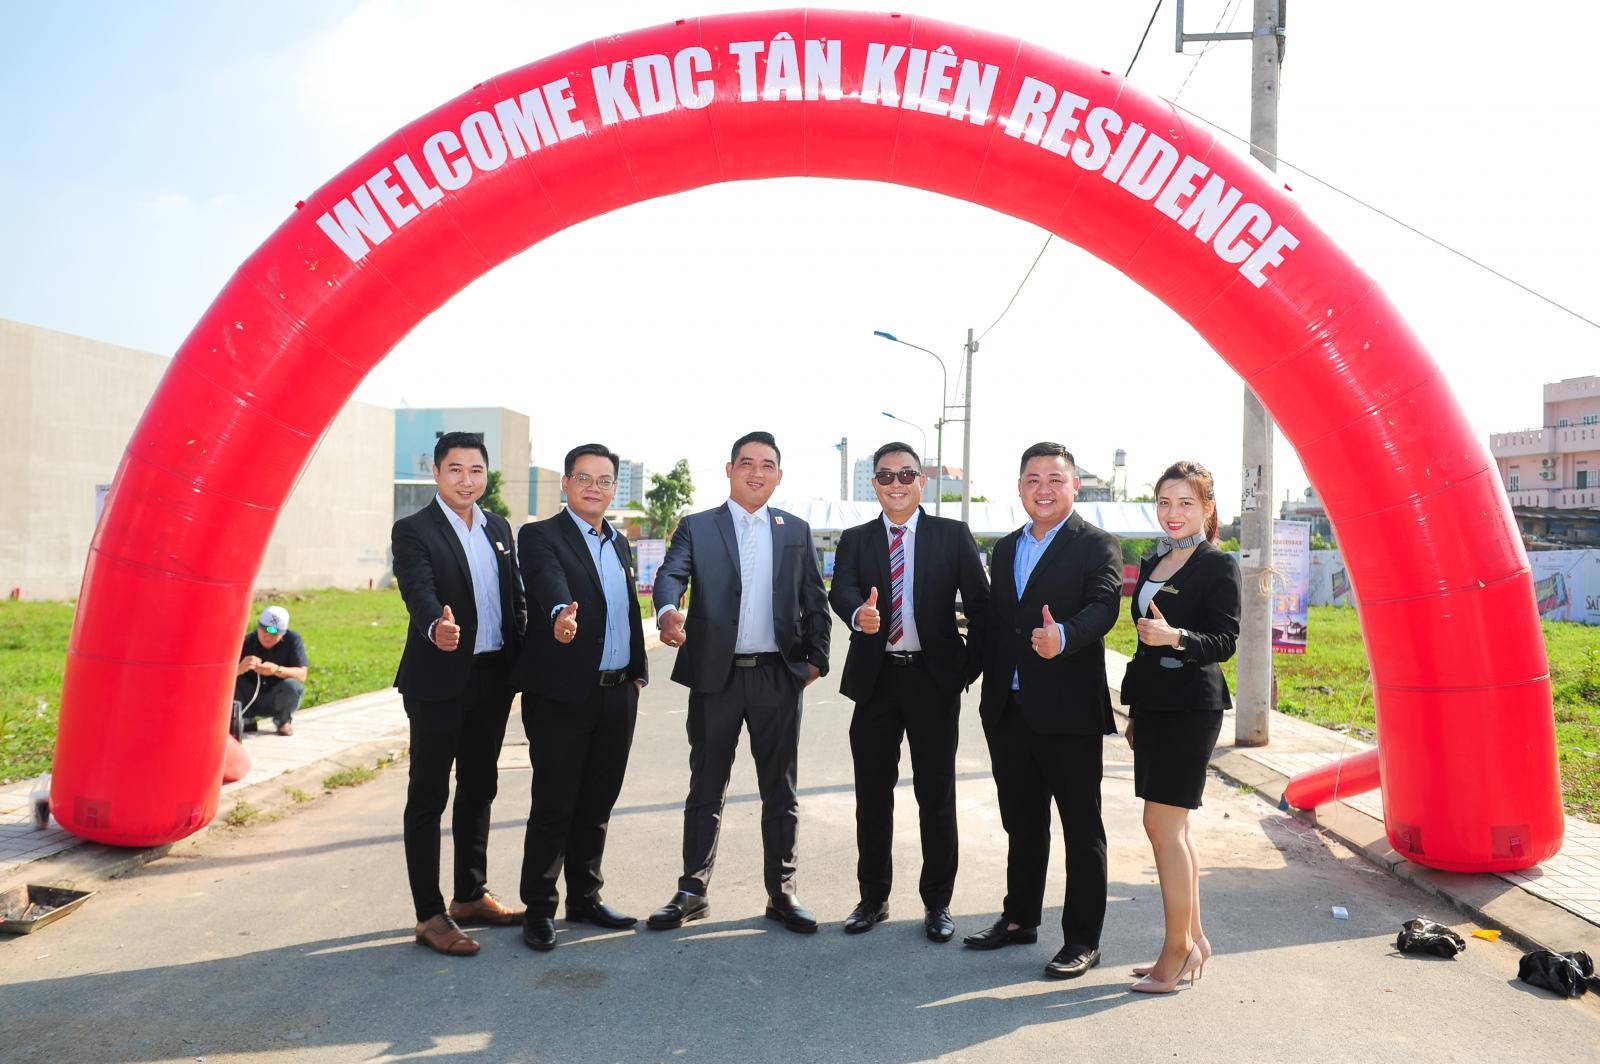 5 người đàn ông và 1 phụ nữ mặc vest chỉnh tề chụp ảnh tại cổng chào màu đỏ có dòng chữ màu trắng Welcome KDC Tân Kiên Residence